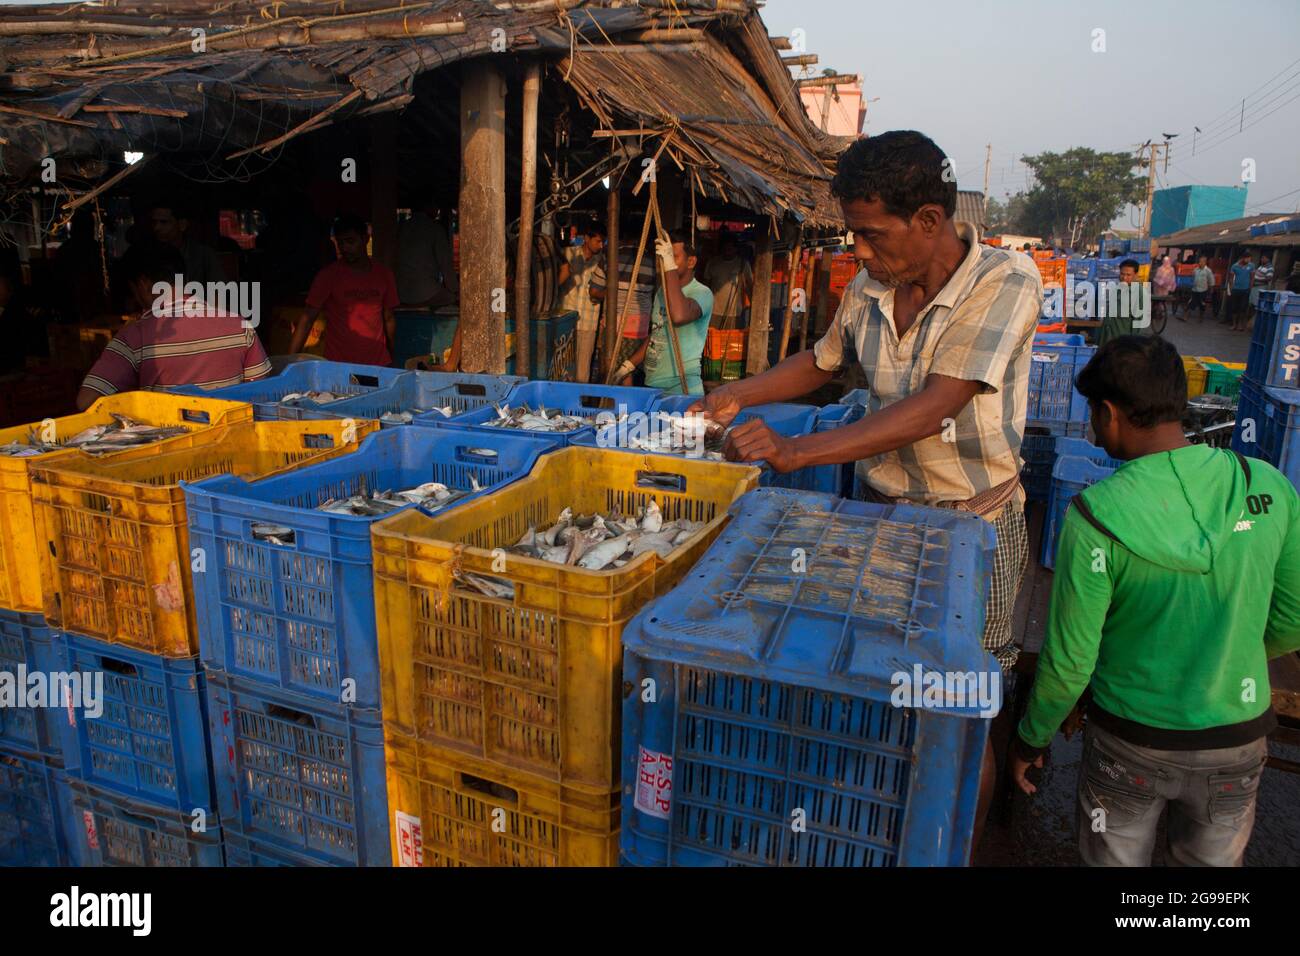 Geschäftige Aktivitäten auf dem Fischgroßmarkt in Digha, Westbengalen, Indien, einem der beliebtesten Touristenstrands Bengalens und einem der größten Fischmärkte. Stockfoto